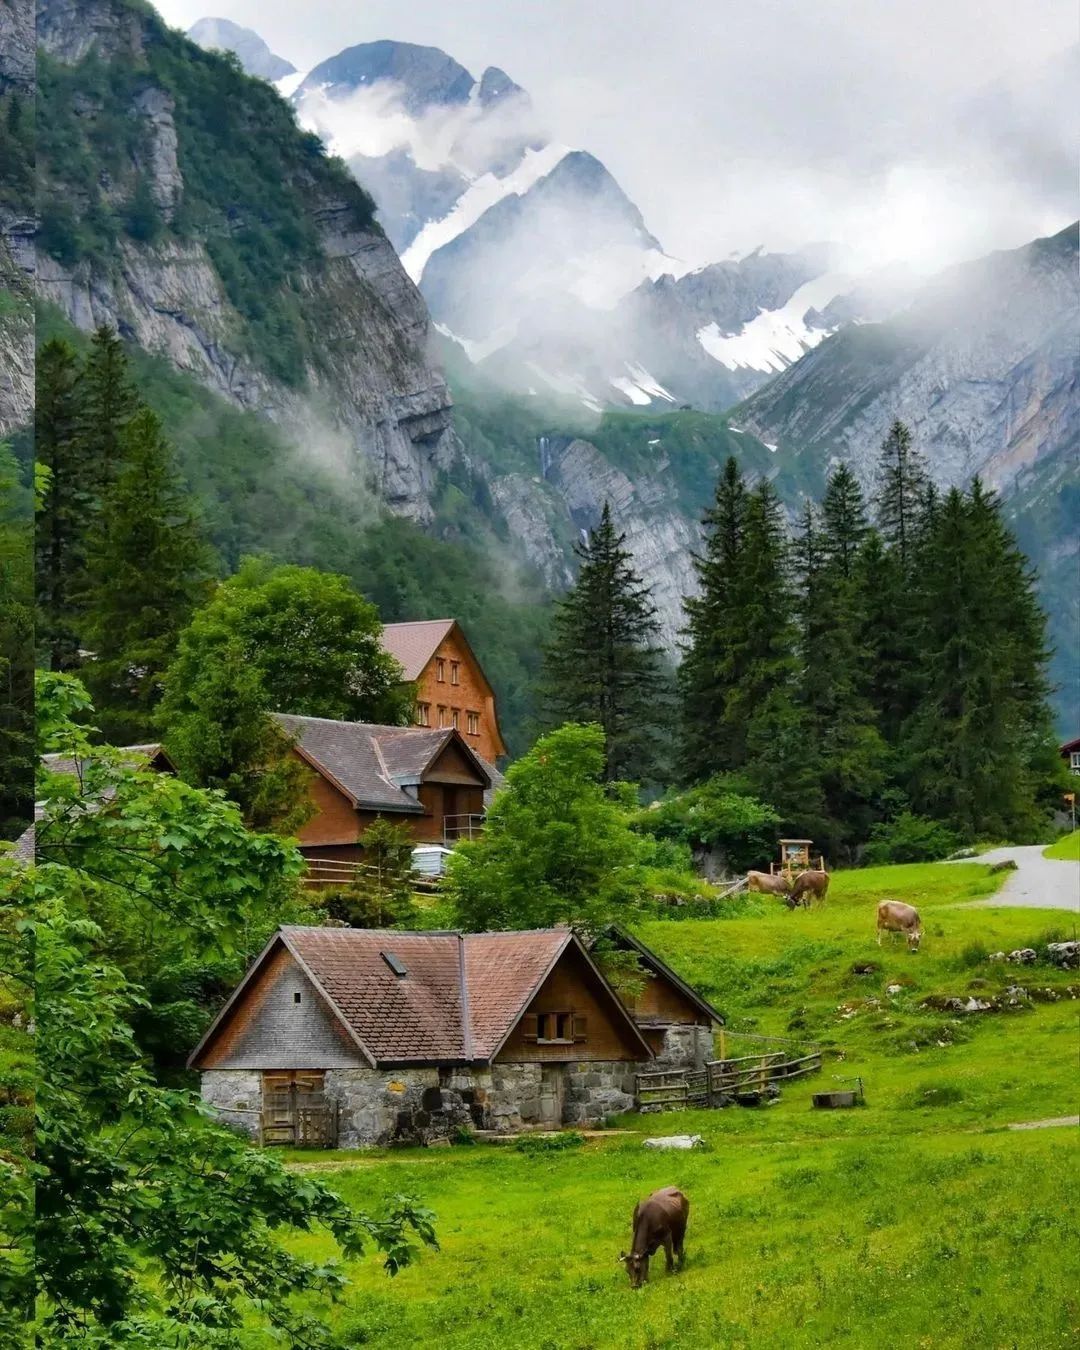 Природа Альпийские горы. Пасутся коровки на Альпийских лугах, в Альпийской деревне.